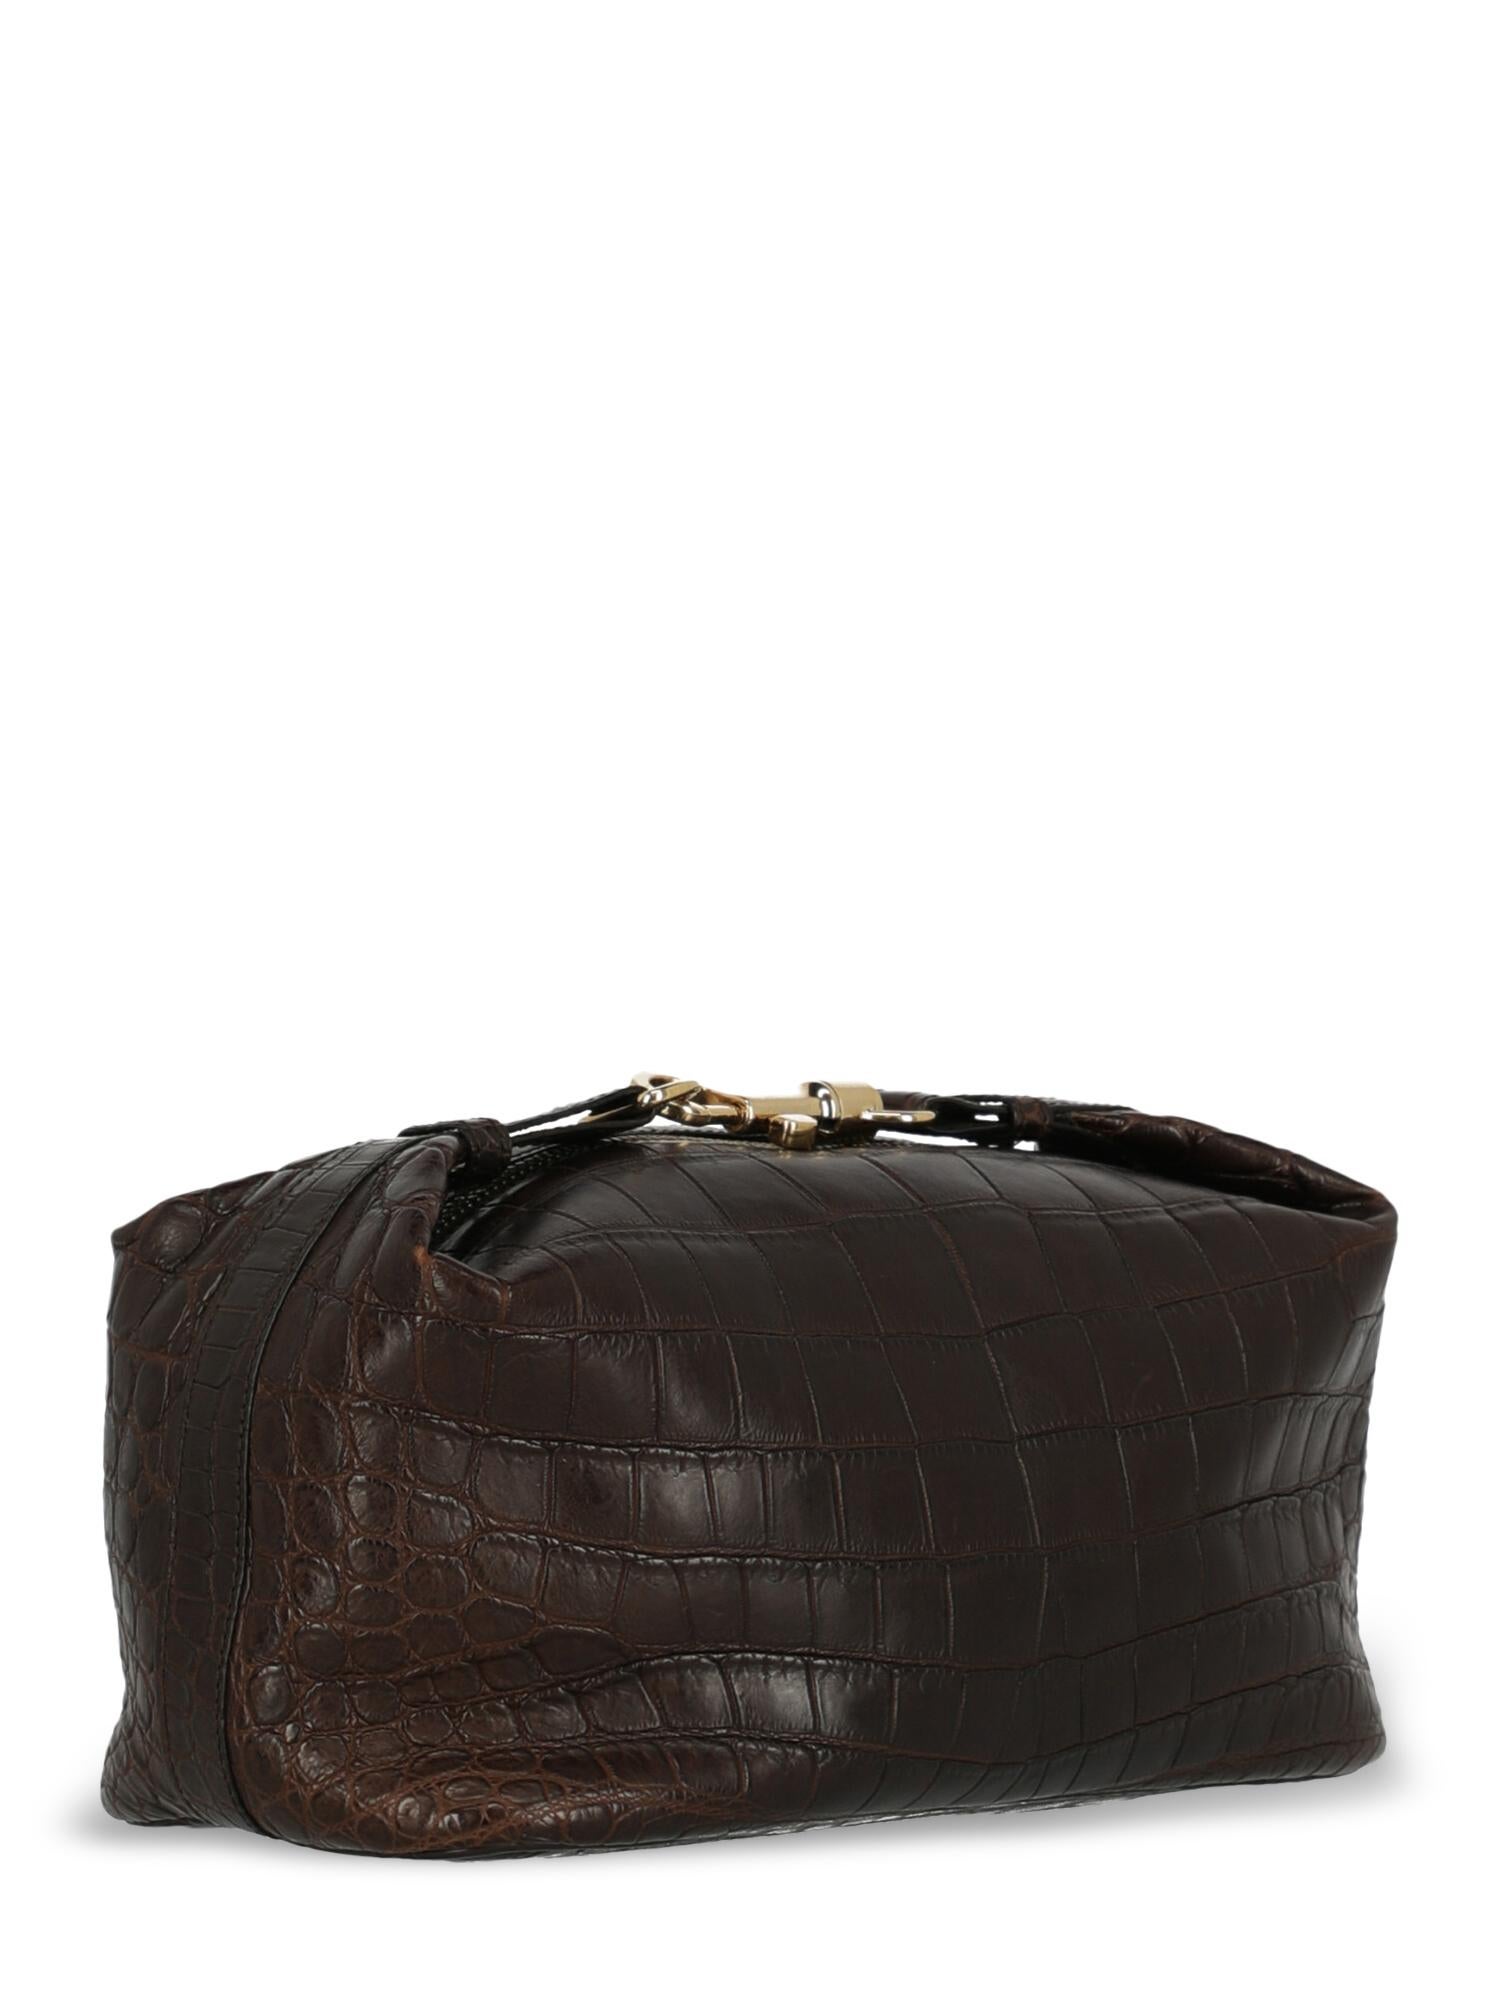 Black Bottega Veneta Woman Handbag Brown 